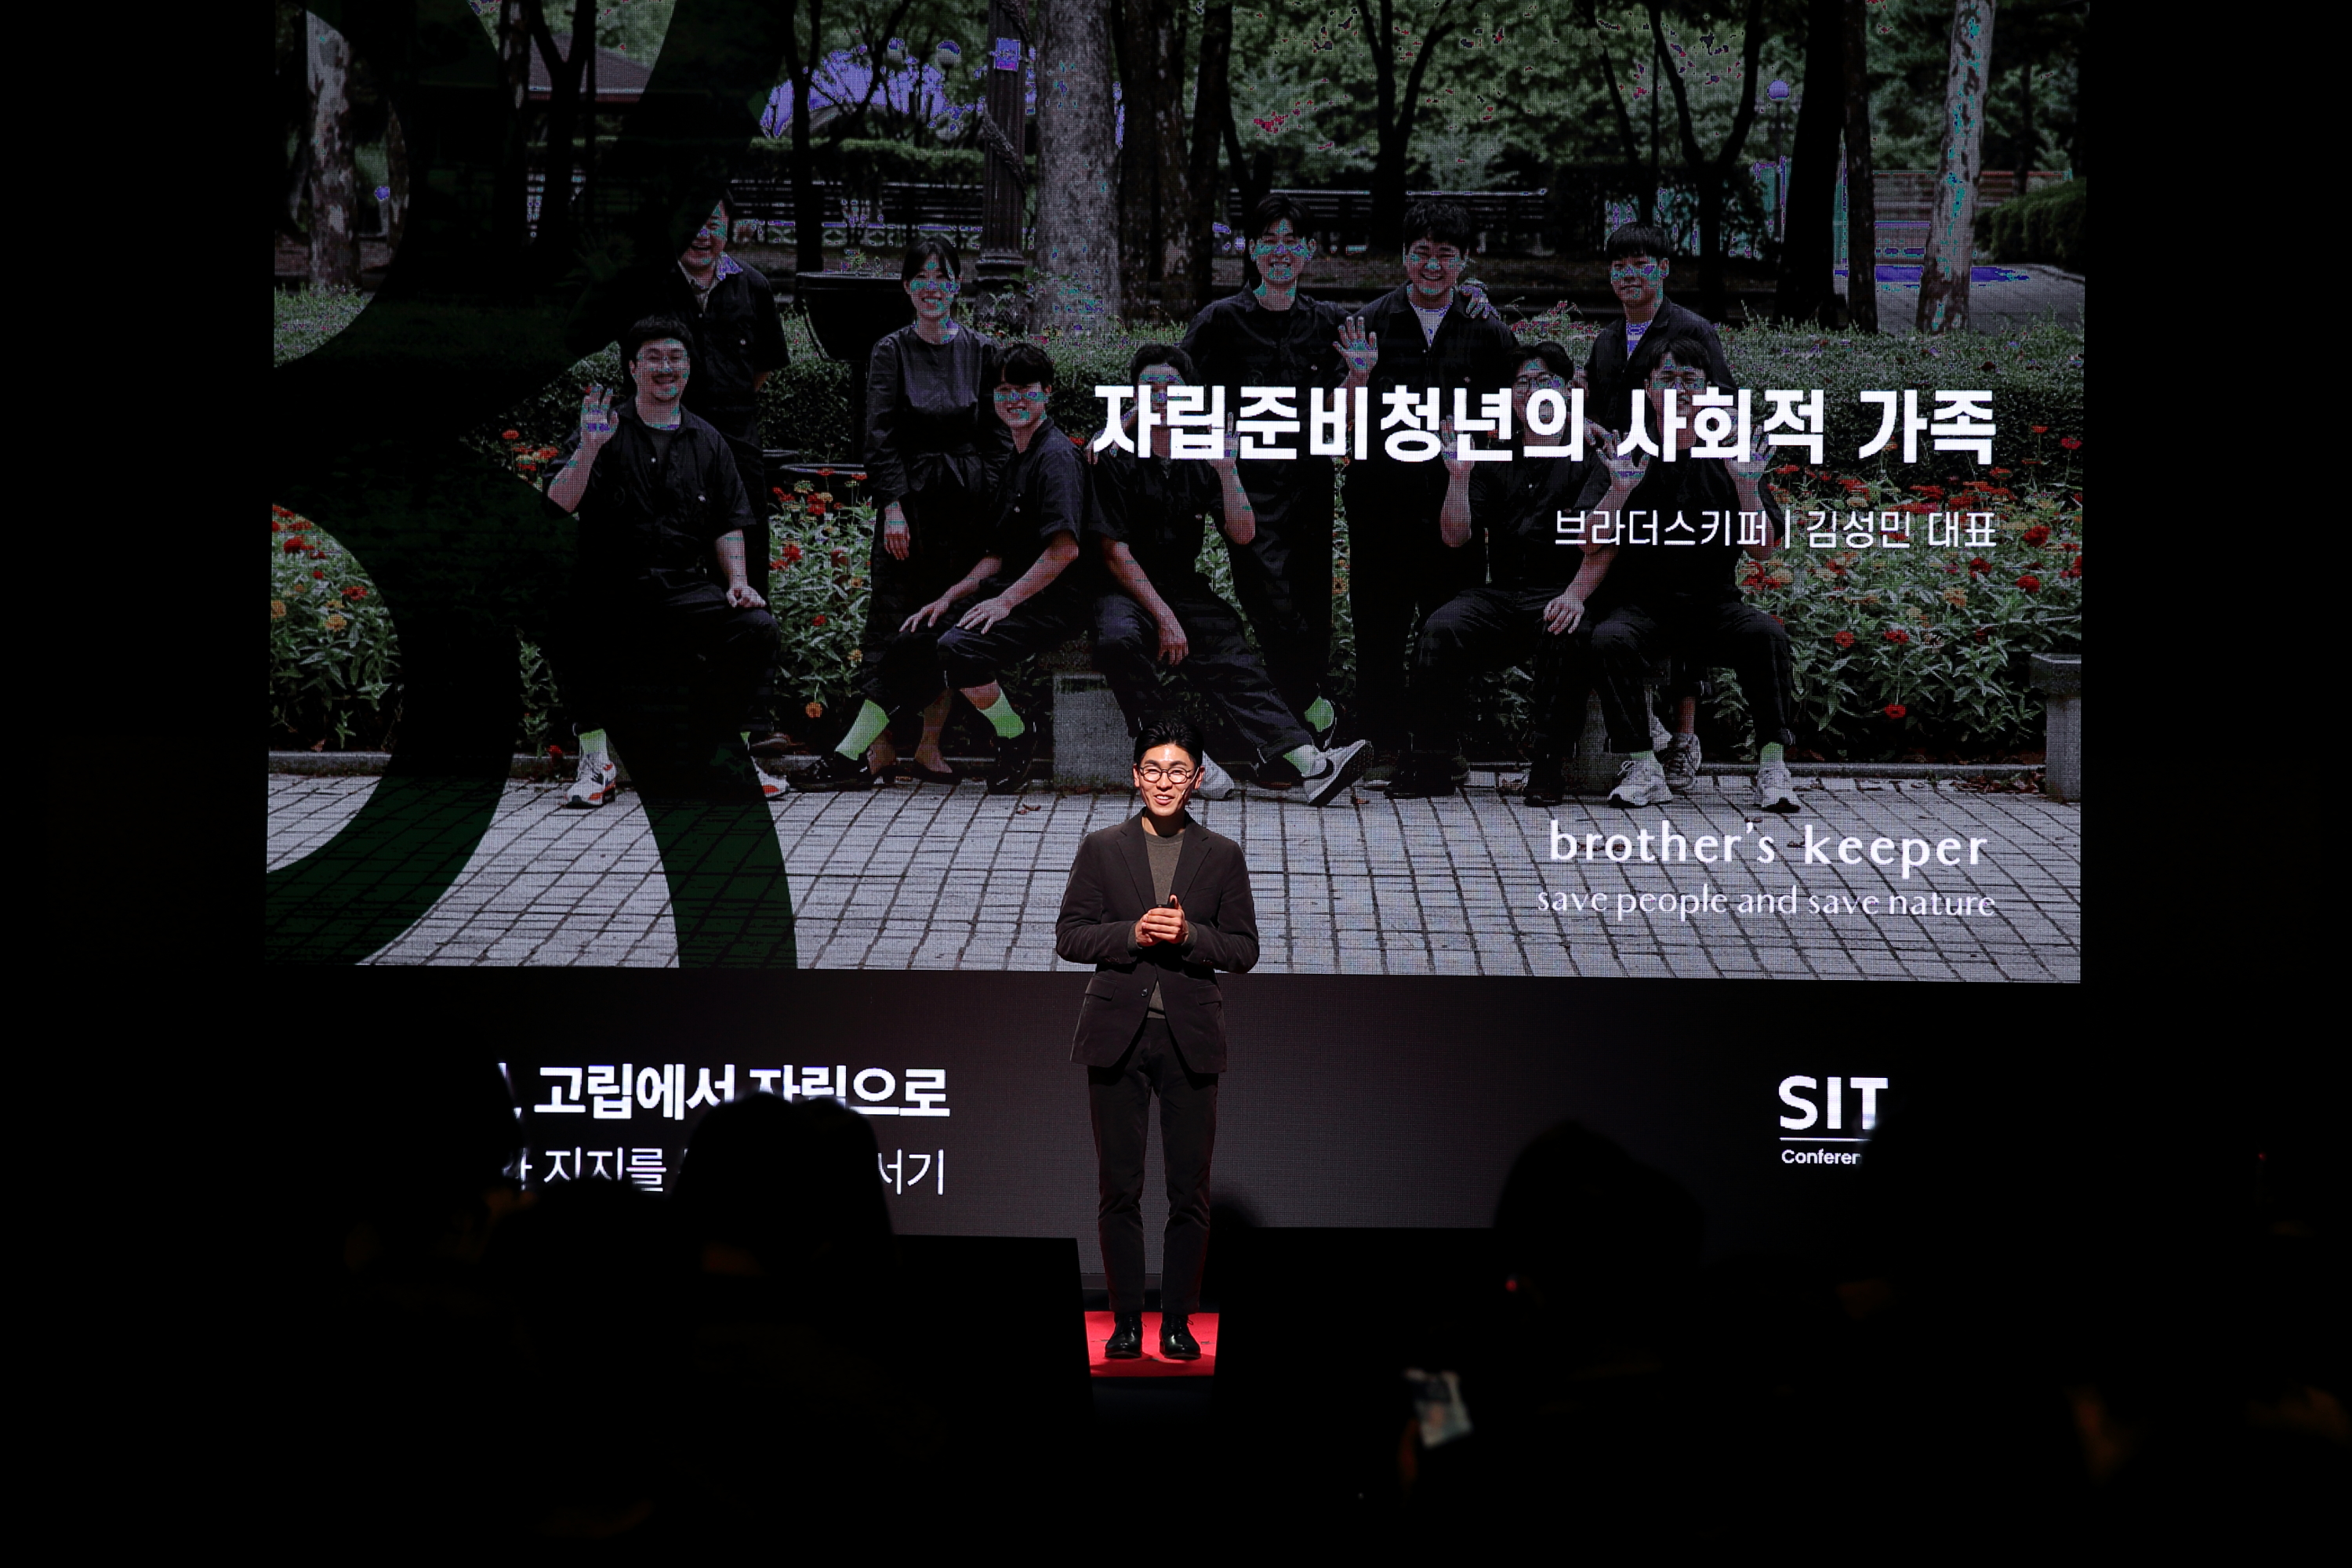 브라더스키퍼 김성민 대표가 '자립준비청년의 사회적 가족'이라는 제목으로 발표를 하고 있는 모습